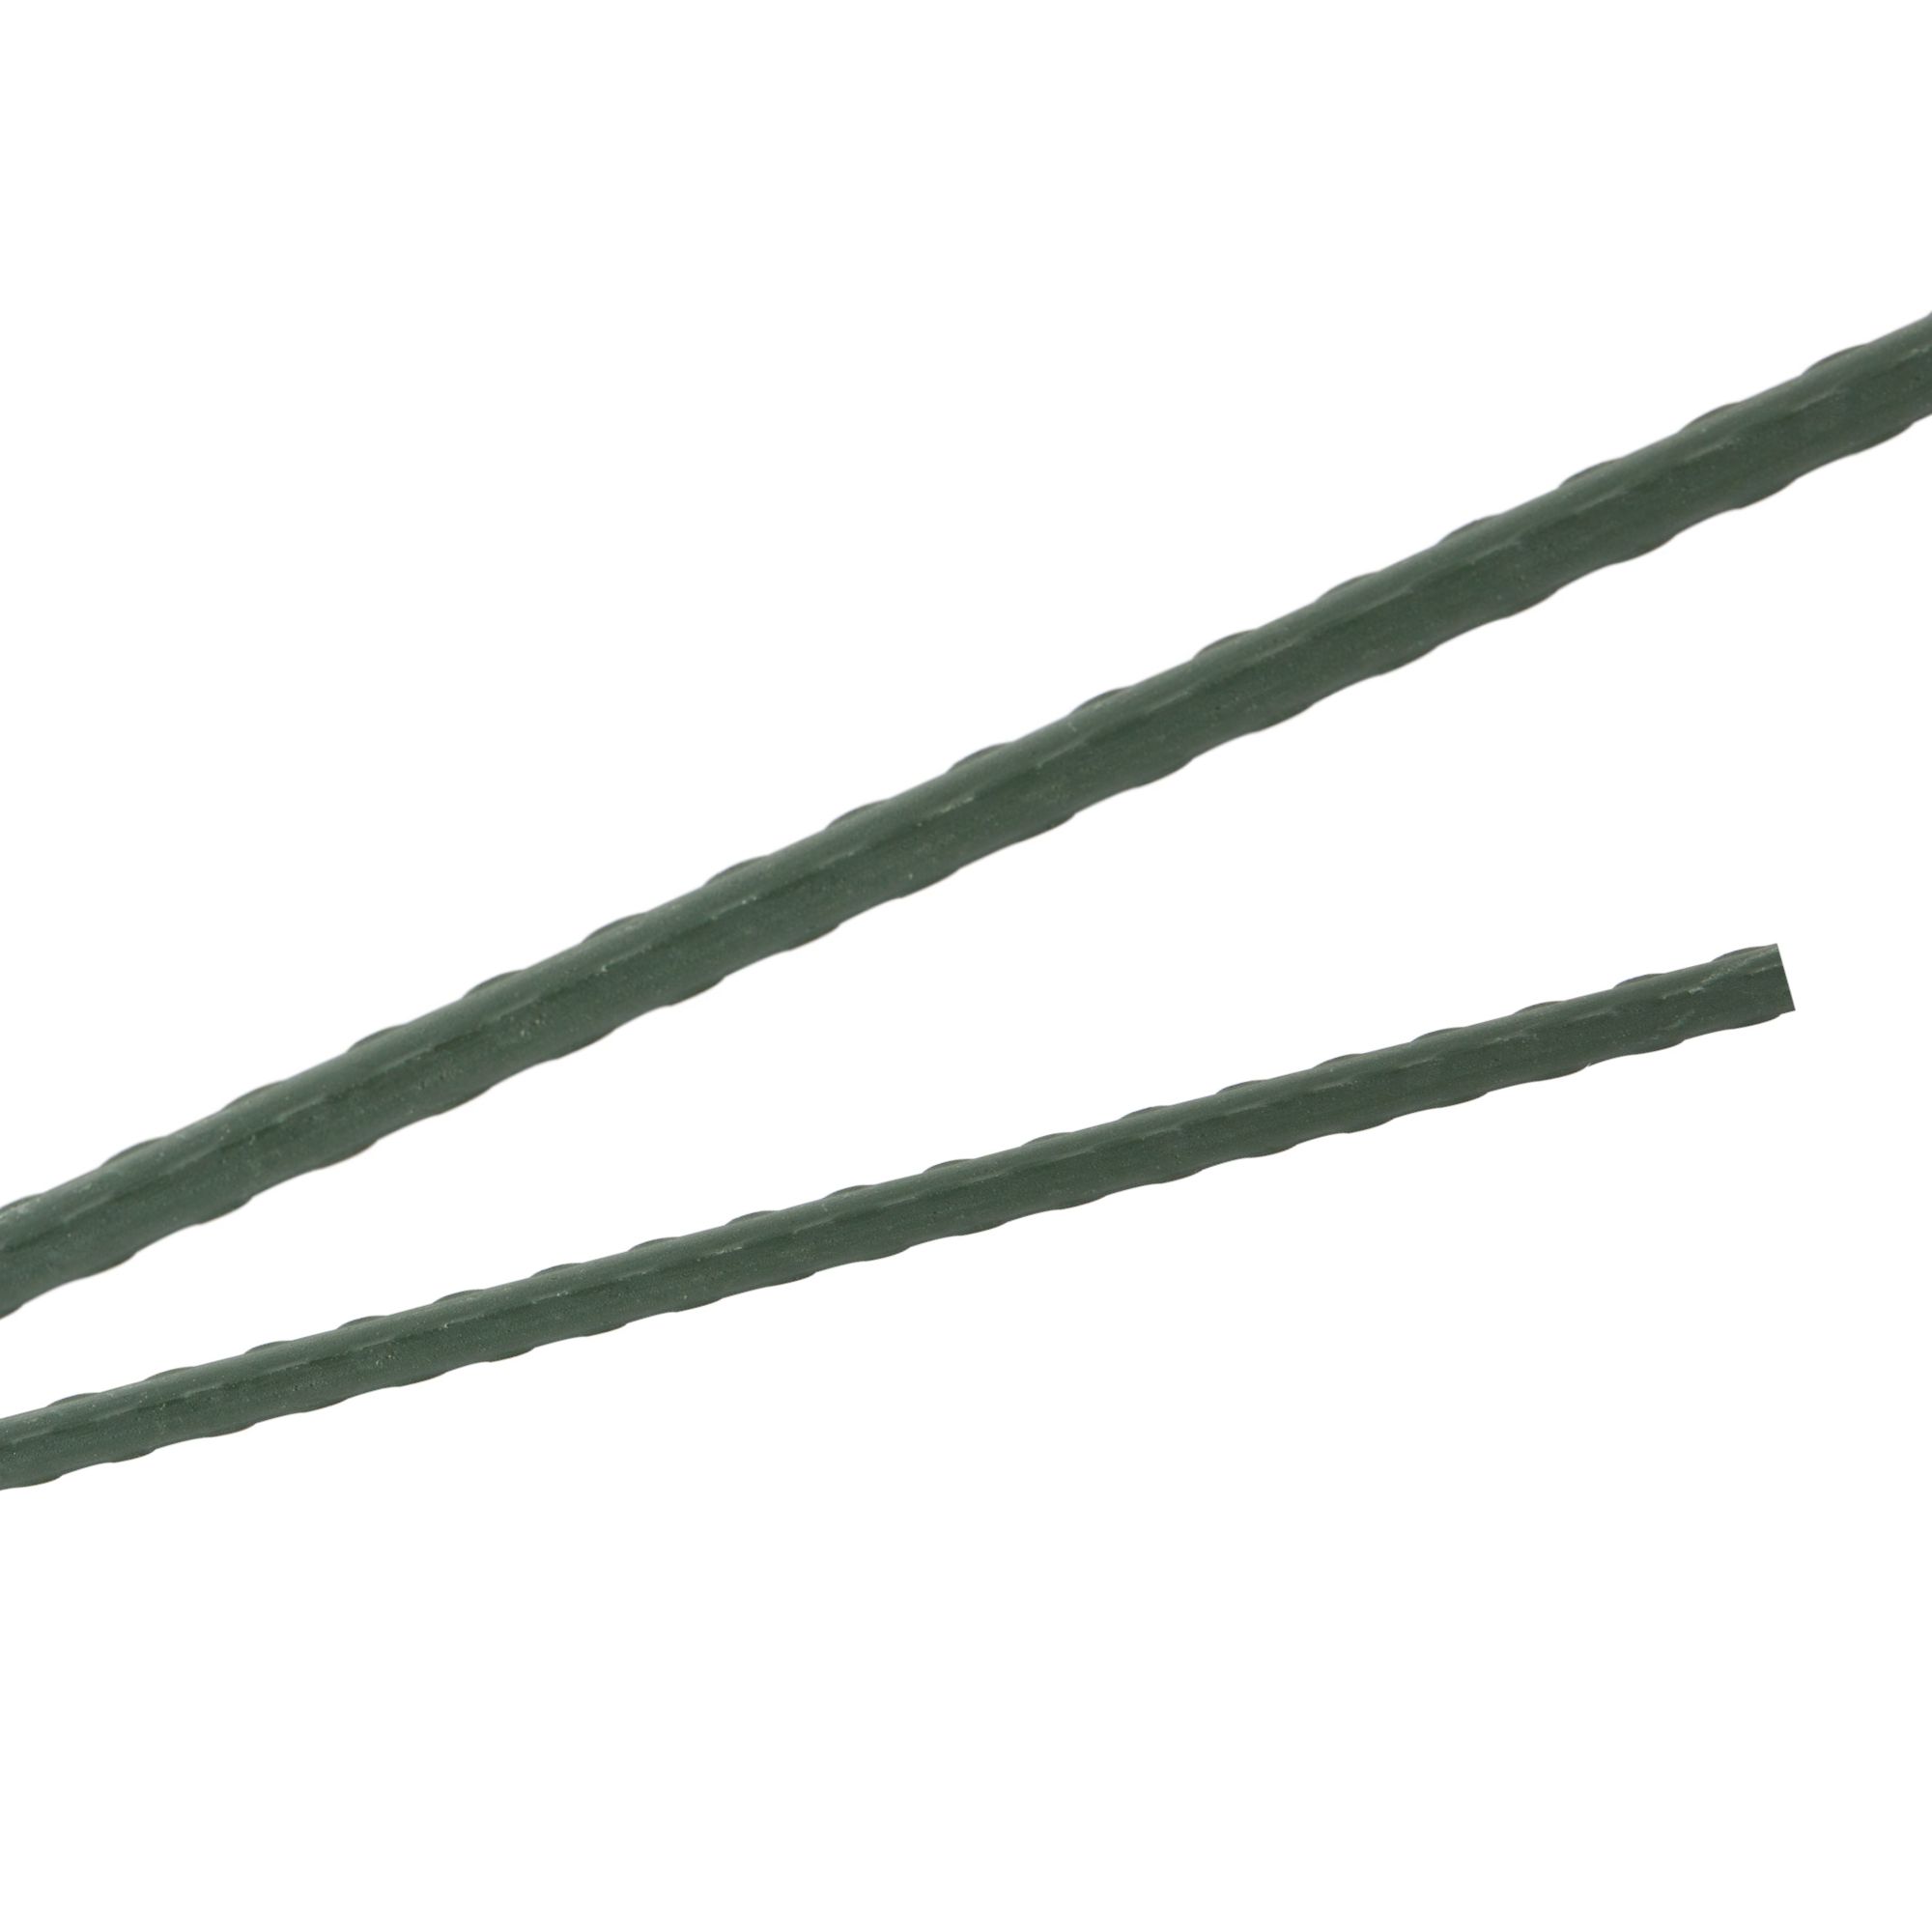 Tyč podpěrná, 20mm, 150cm, kov+PVC, zelená 0.280000 Kg GIGA Sklad20 211769 185